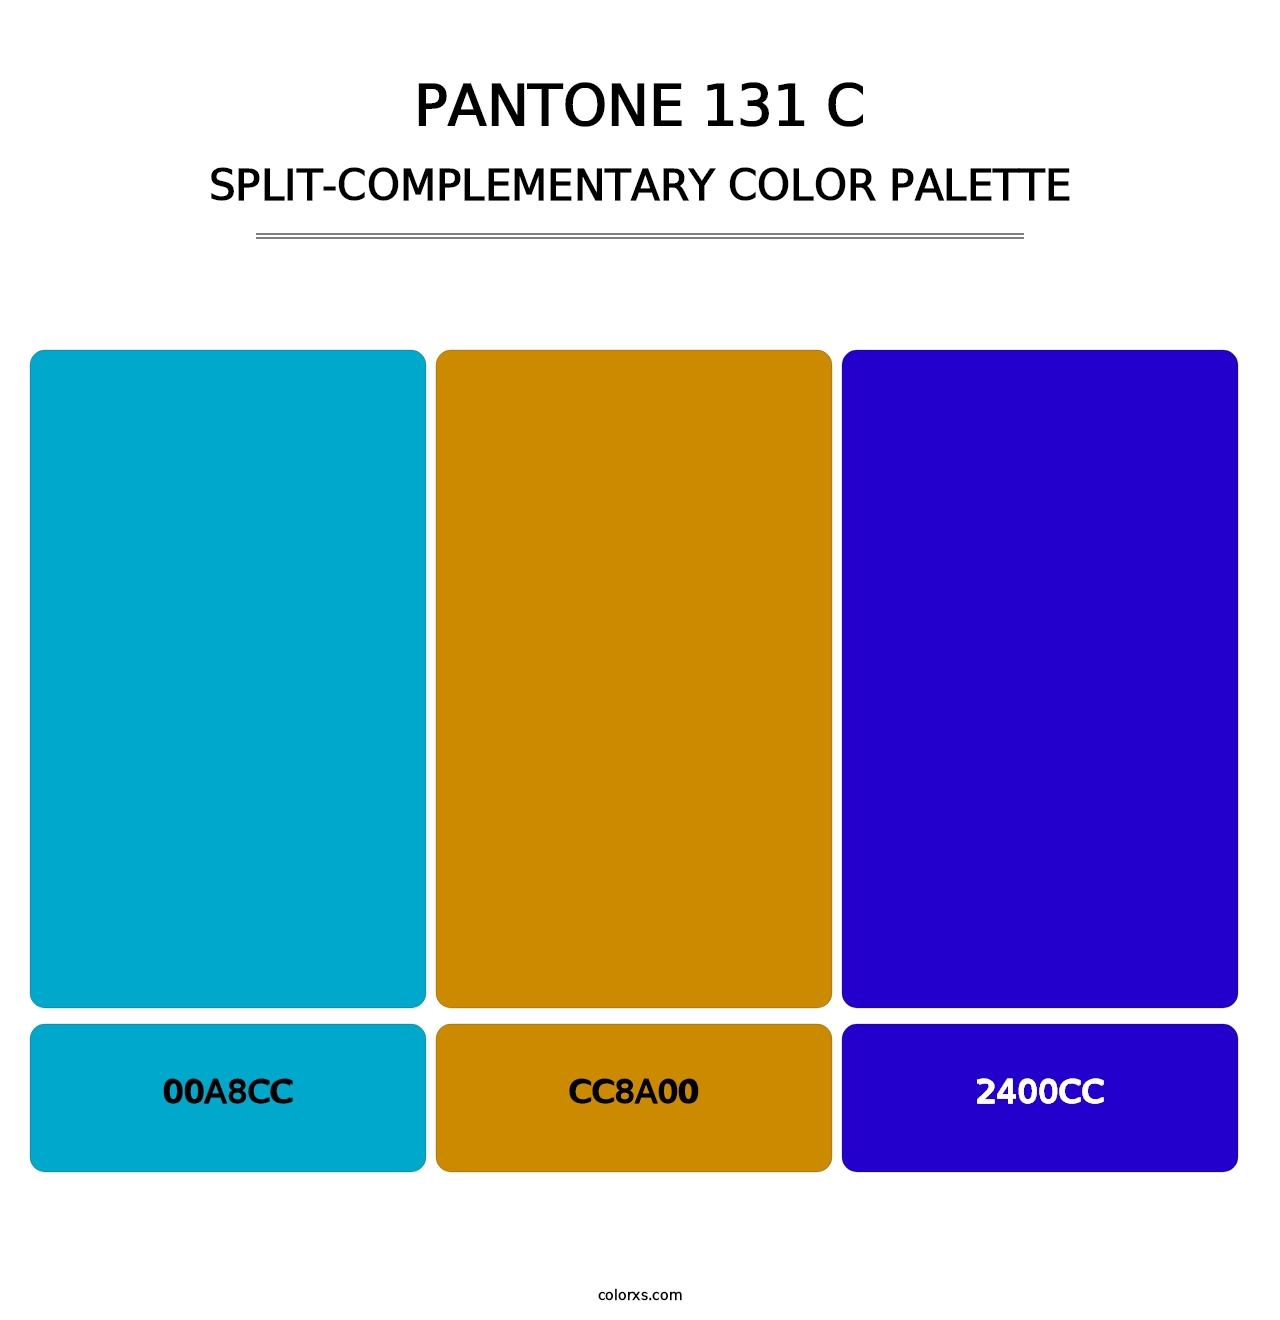 PANTONE 131 C - Split-Complementary Color Palette